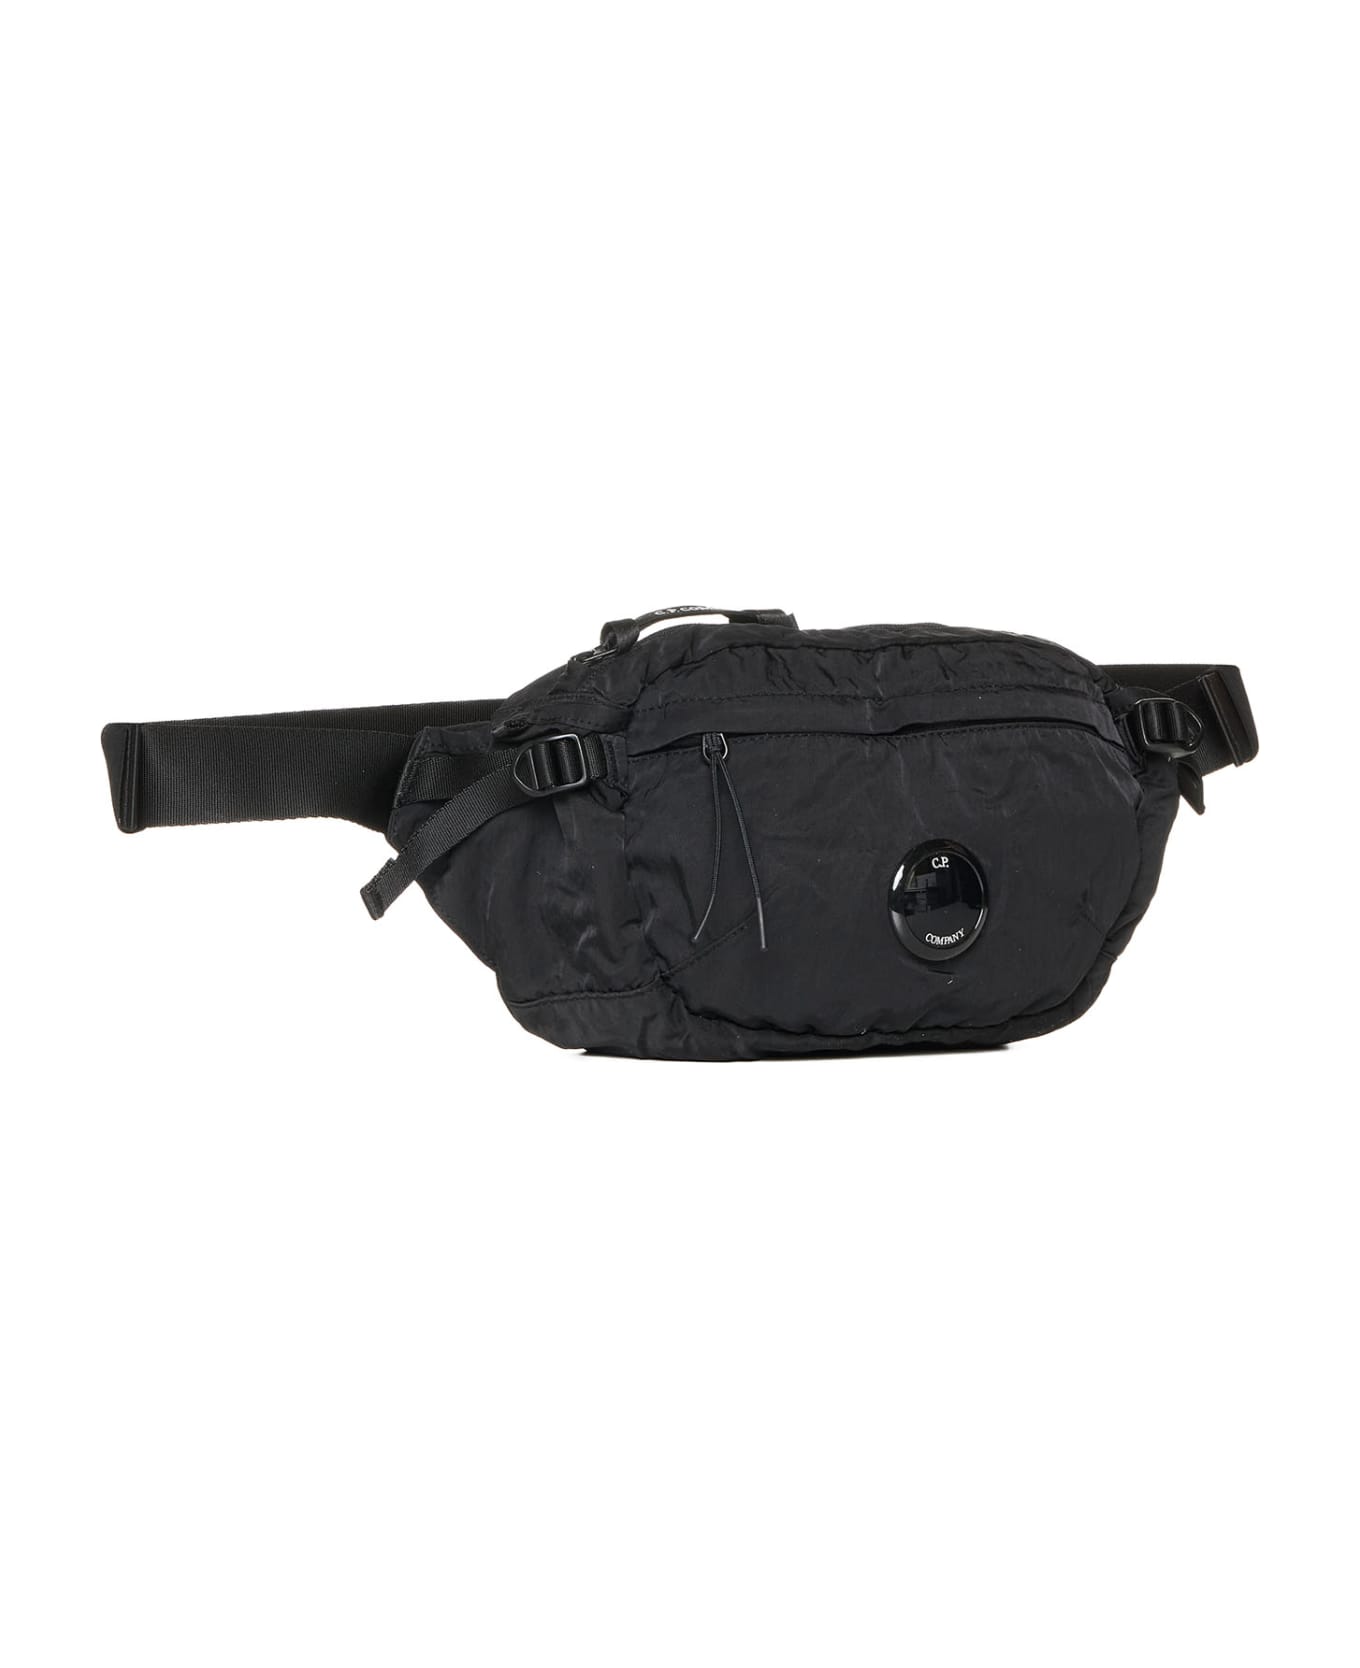 C.P. Company Belt Bag - Black